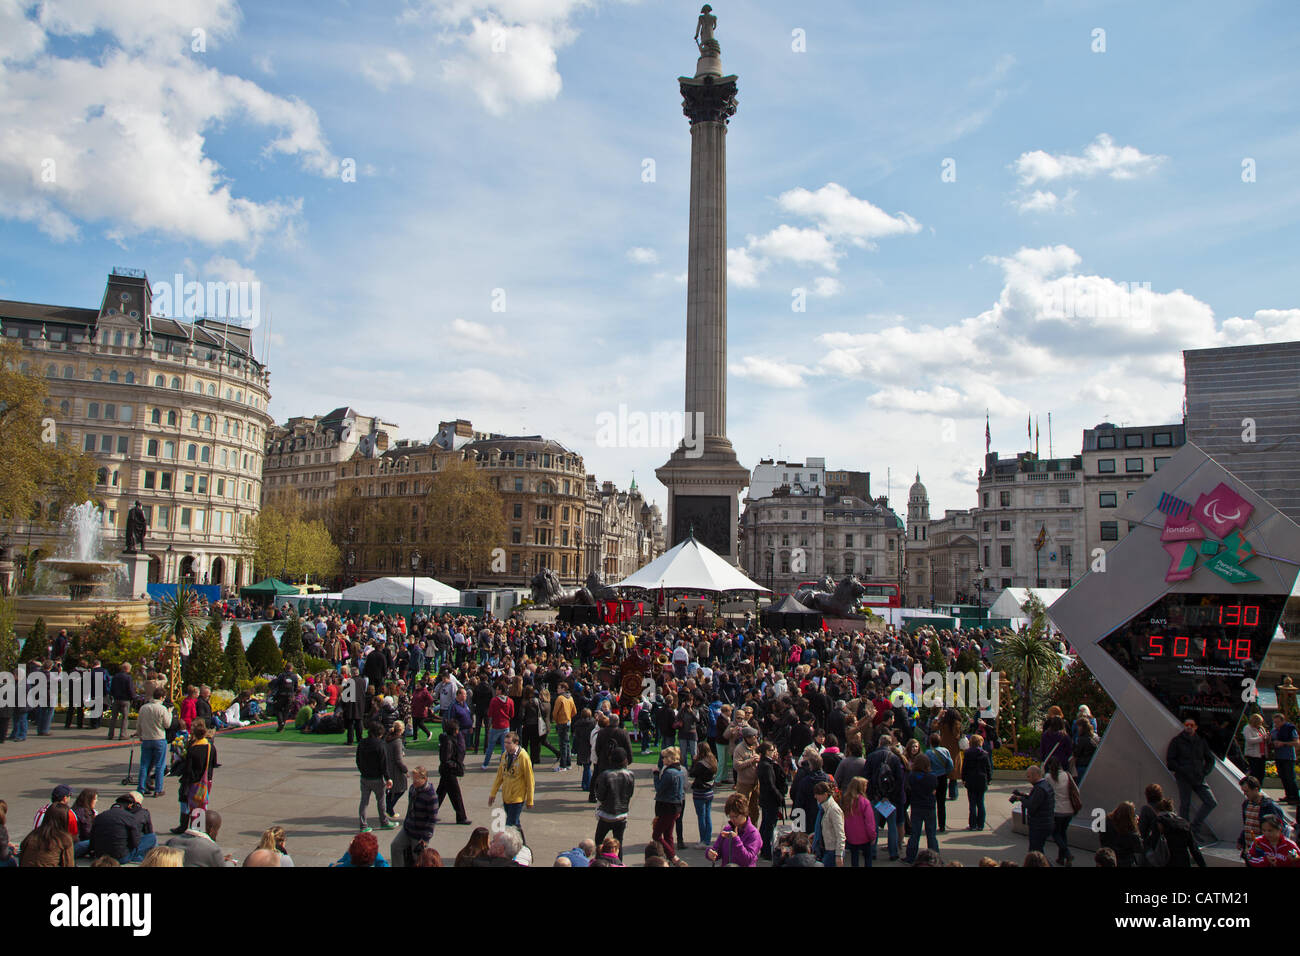 Londres, Royaume-Uni. 21 avr 2012 Trafalgar Square a été transformé en un jardin anglais pour la St George's Day Festival. Il comporte des installations de jardinage, art floral et les expositions de cultiver vos propres fruits et légumes. Un kiosque a accueilli des musiciens traditionnels et modernes. Banque D'Images